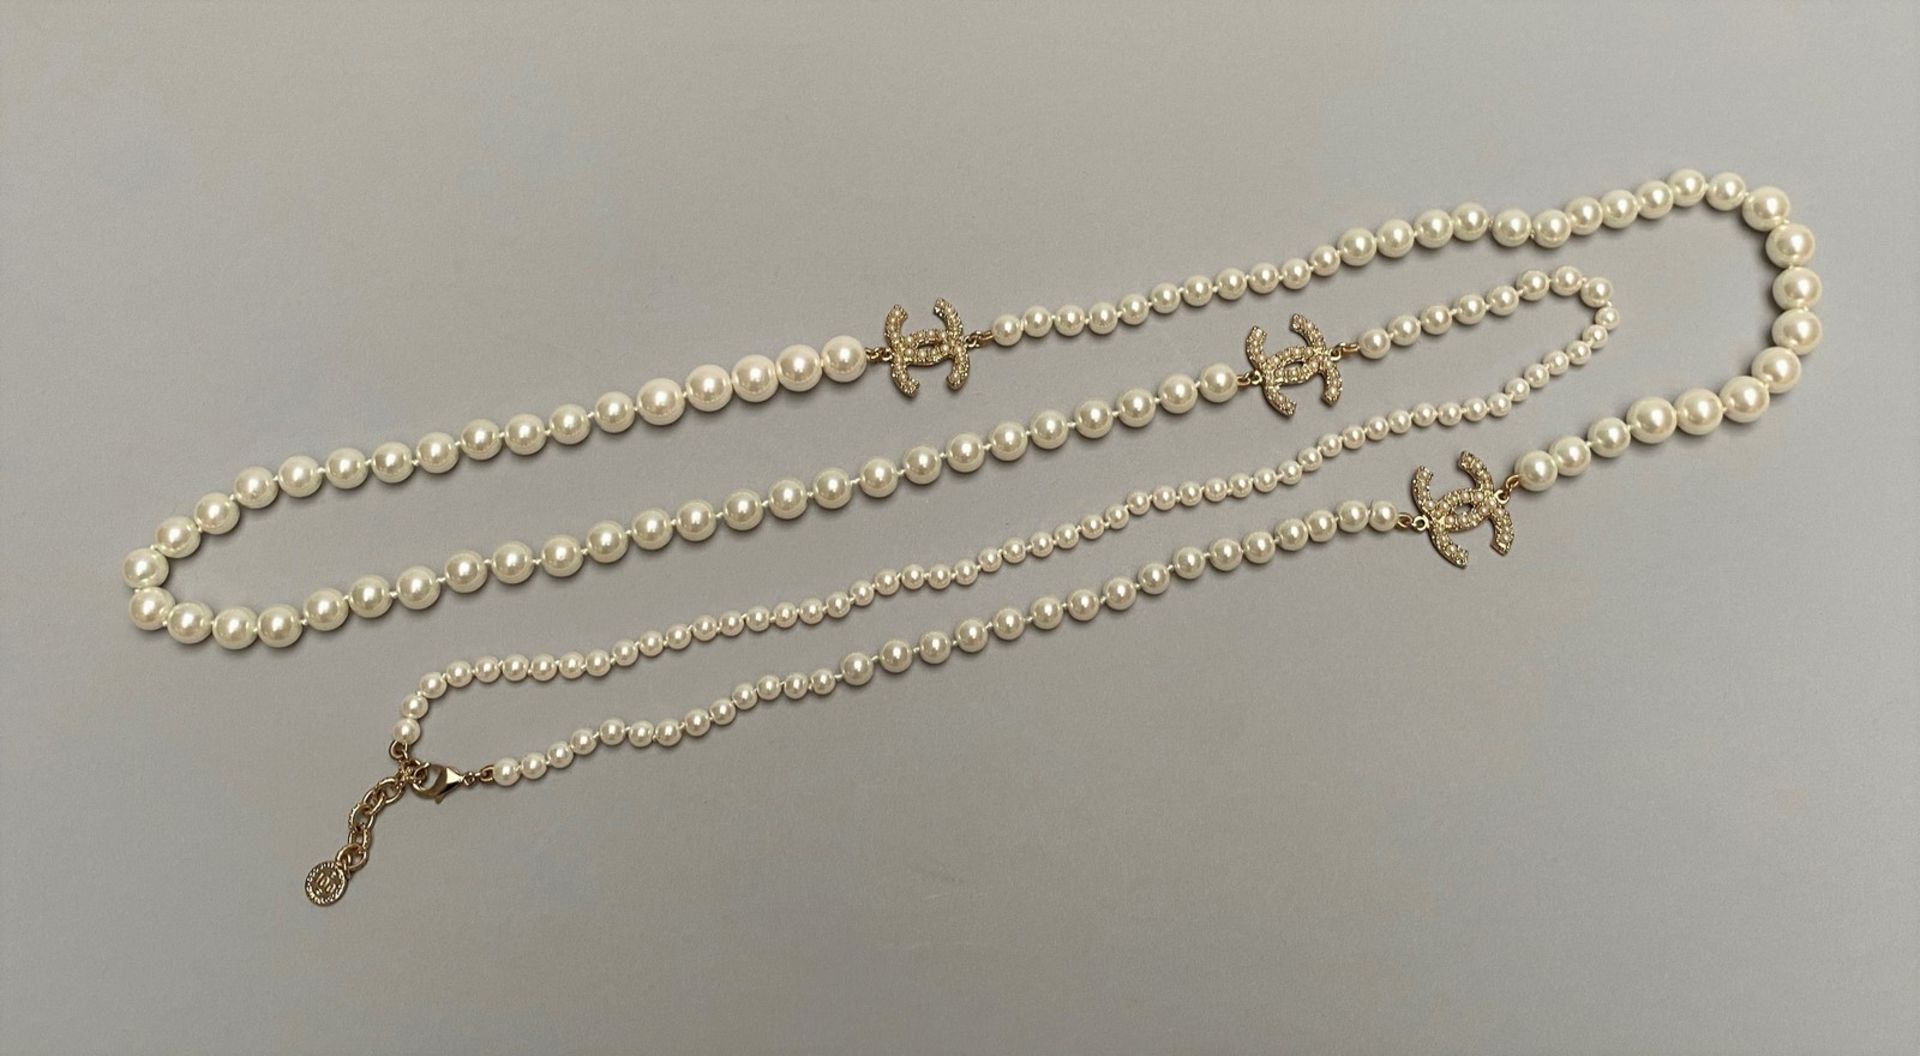 CHANEL - SAUTOIR en perles d'imitation entrecoupées de sigles CC en métal doré [...] - Image 2 of 4